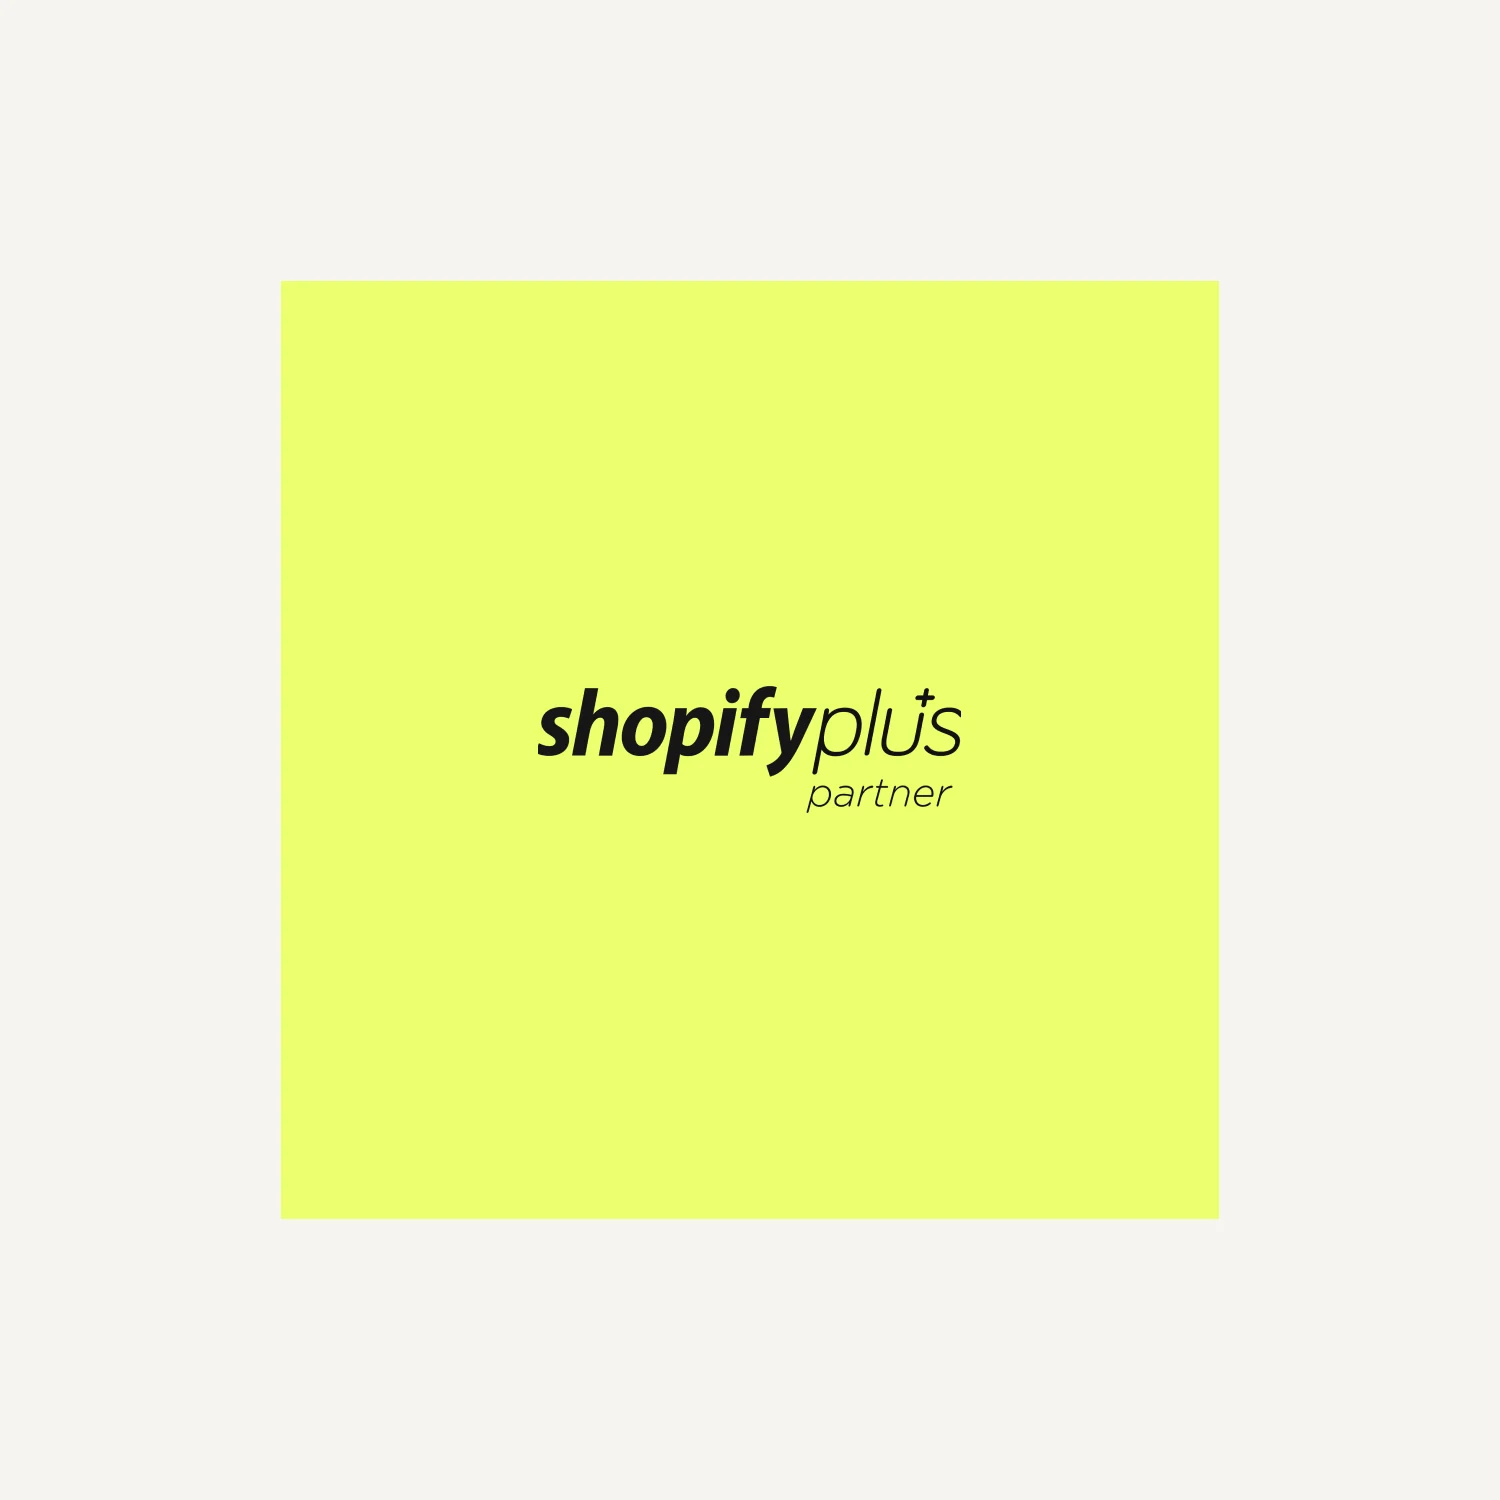 Shopify Plus-image-value-proposition